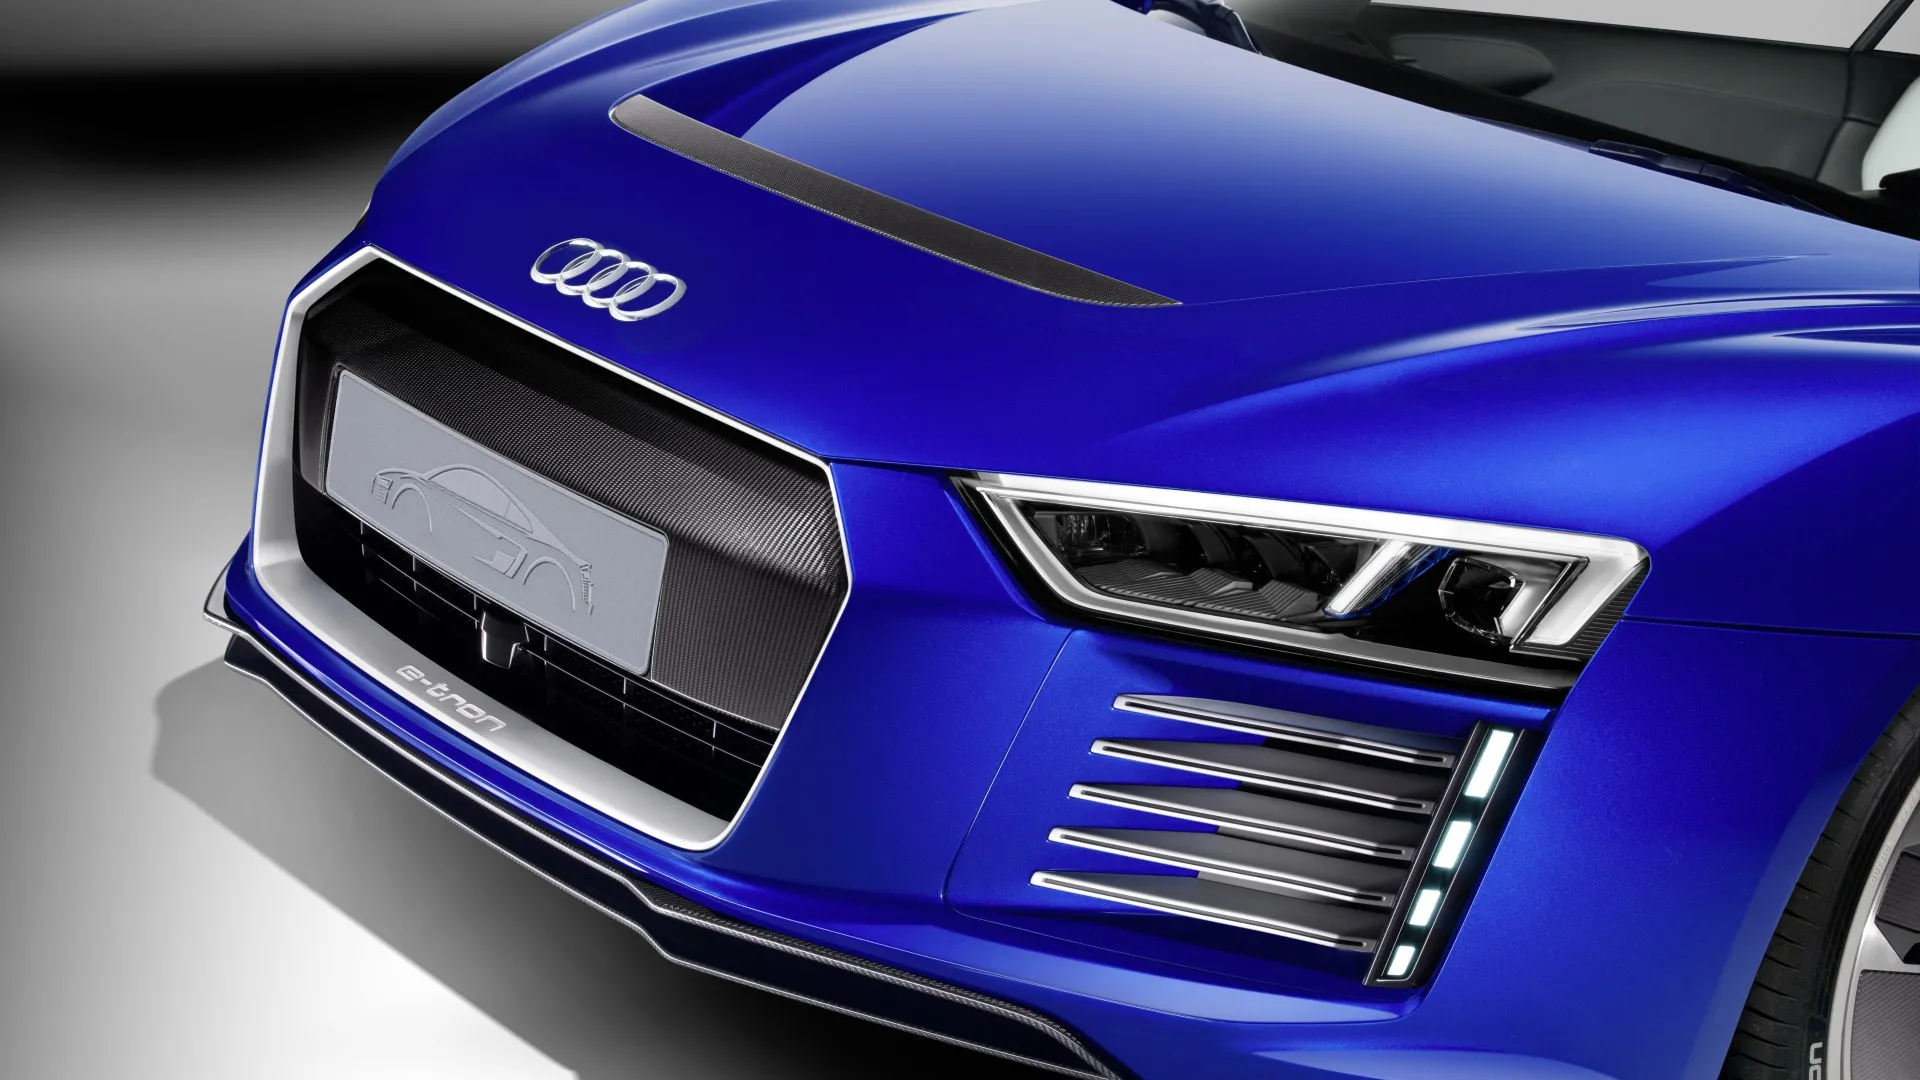 Coche del día: Audi R8 e-tron